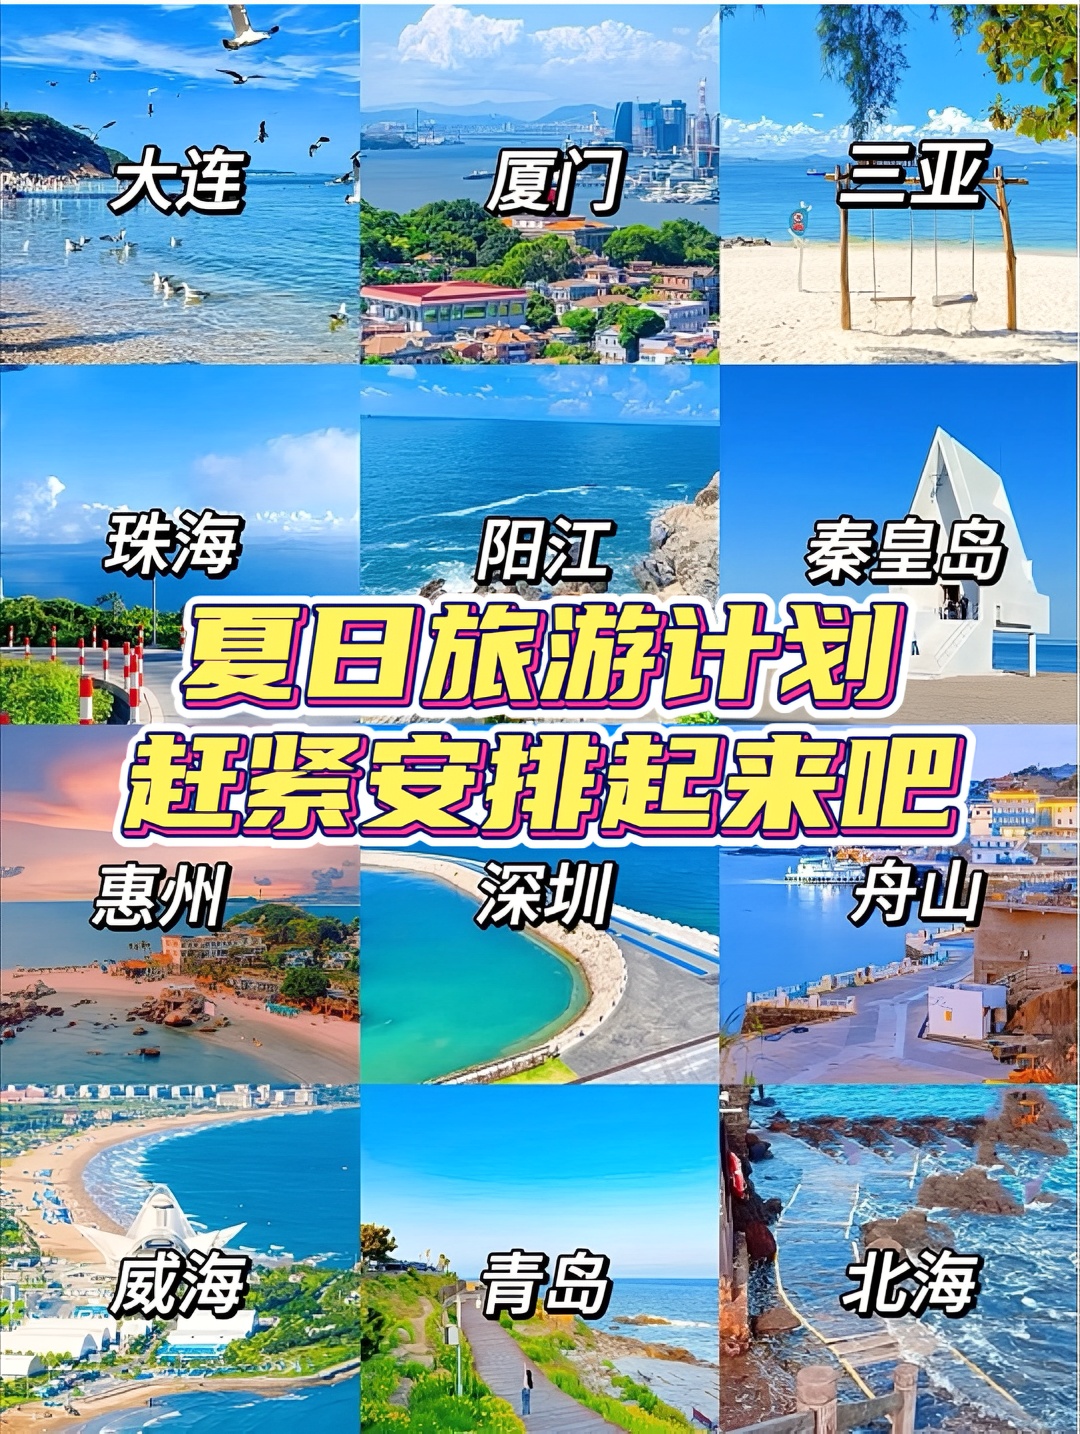 夏日旅游计划｜ 国内最美 1️⃣2️⃣大海岛城市，暑假一起去看海 没有比海滨城市 🏖更适合毕业旅行的